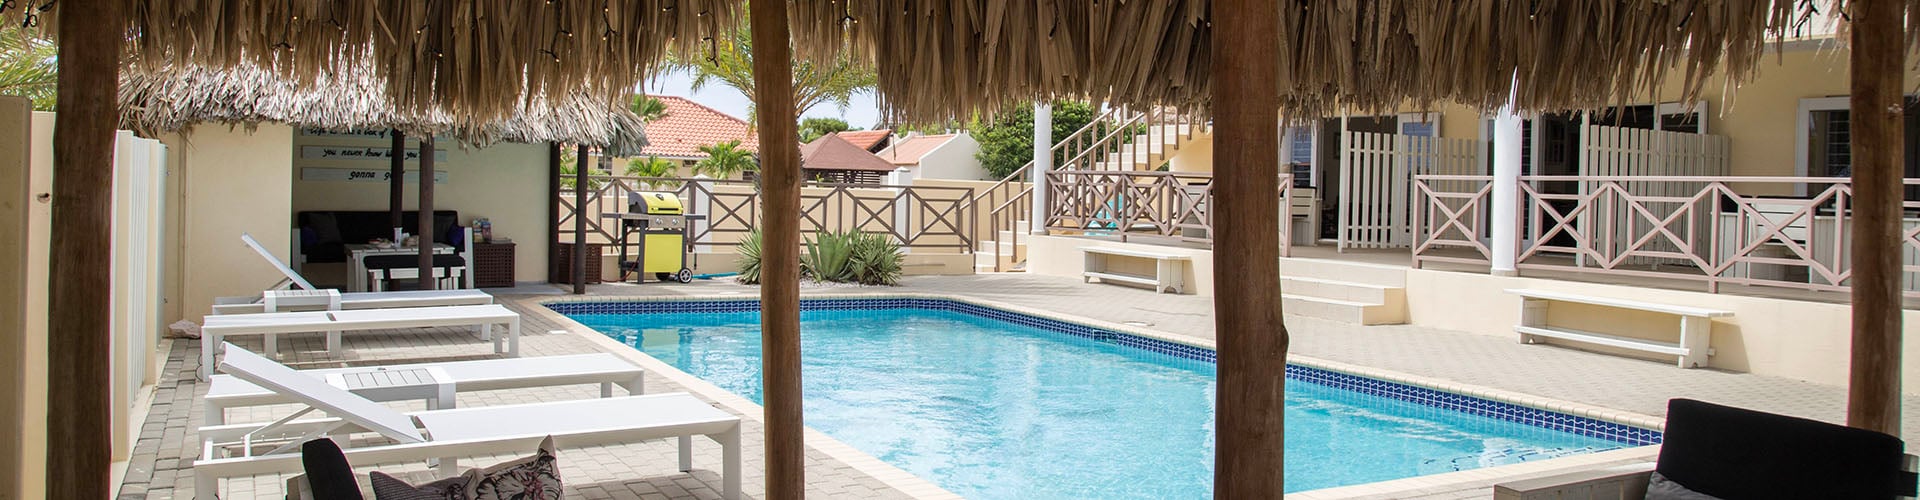 Vakantie accommodaties Curacao op een resort